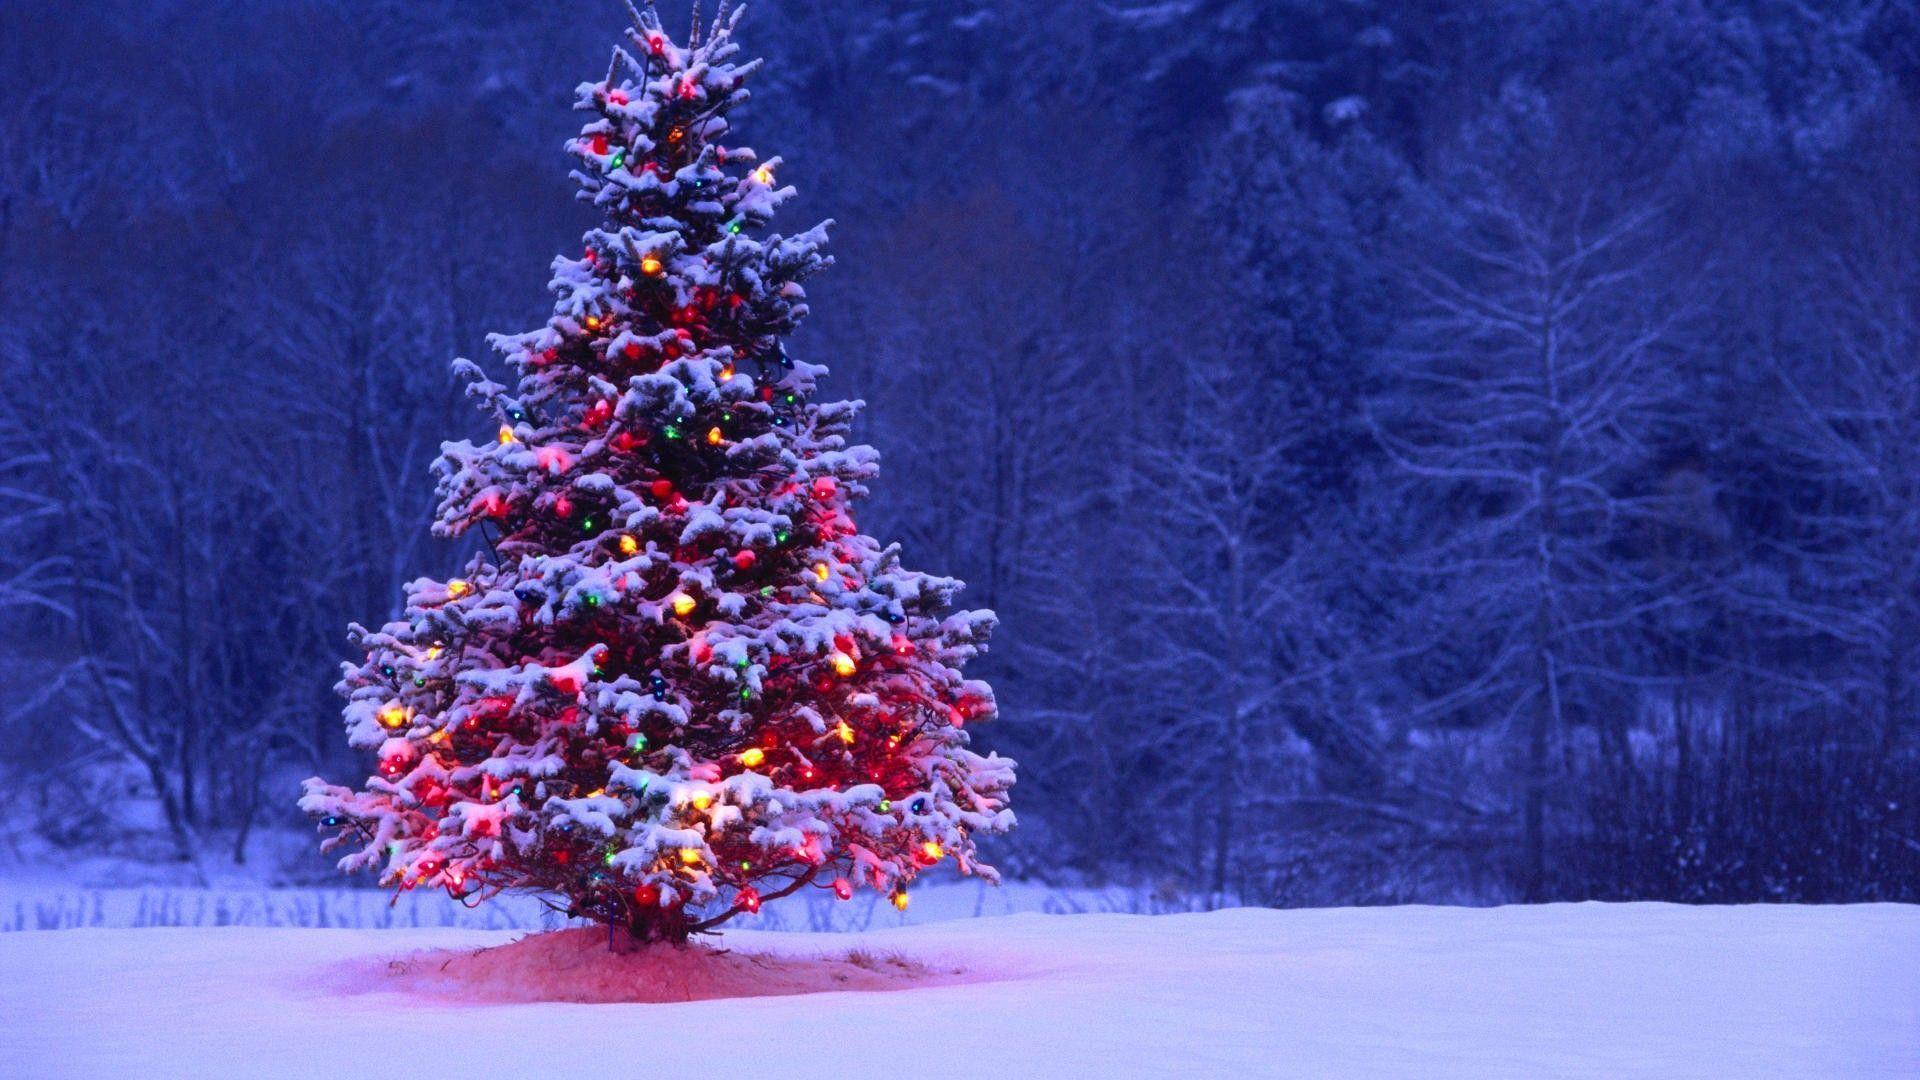 Wallpaper For > Winter Christmas Tree Desktop Background